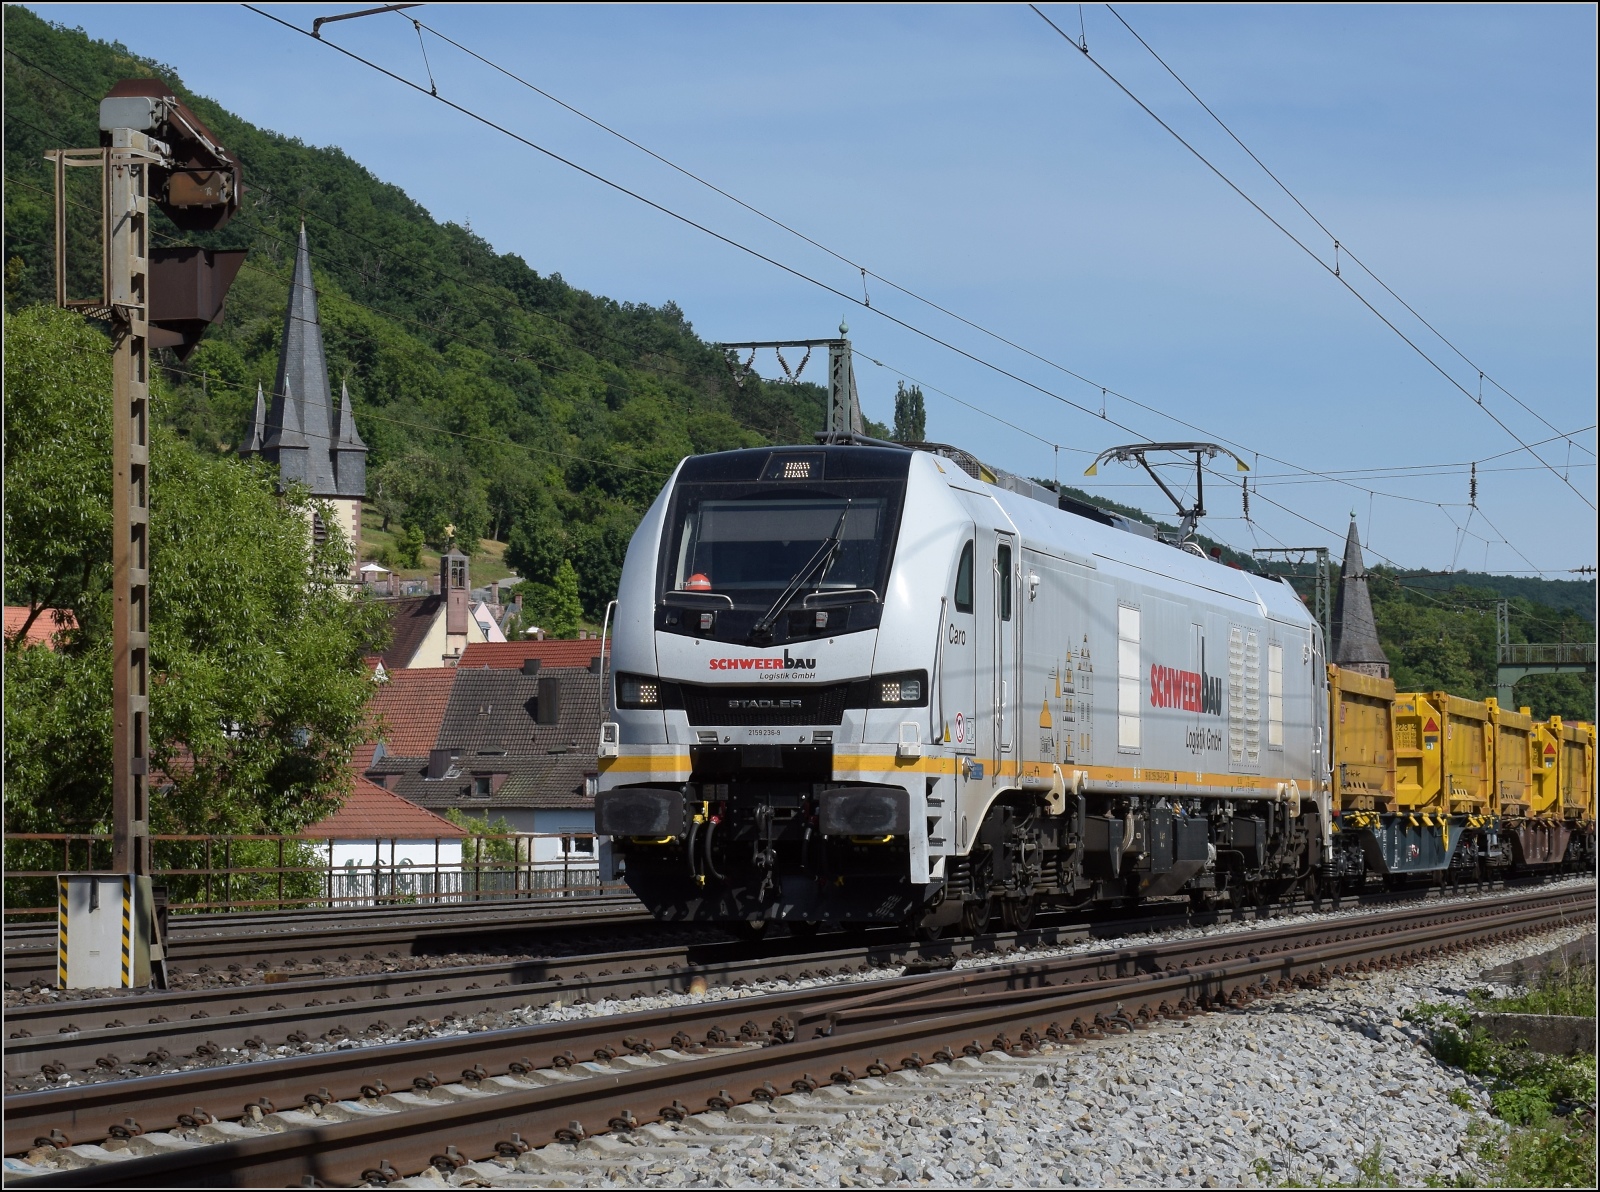 Echte Brummer.

Die Eurodual 159 236 von Schweer Bau vor der Kulisse des historischen Städchens Gmünden am Main. Juni 2022.